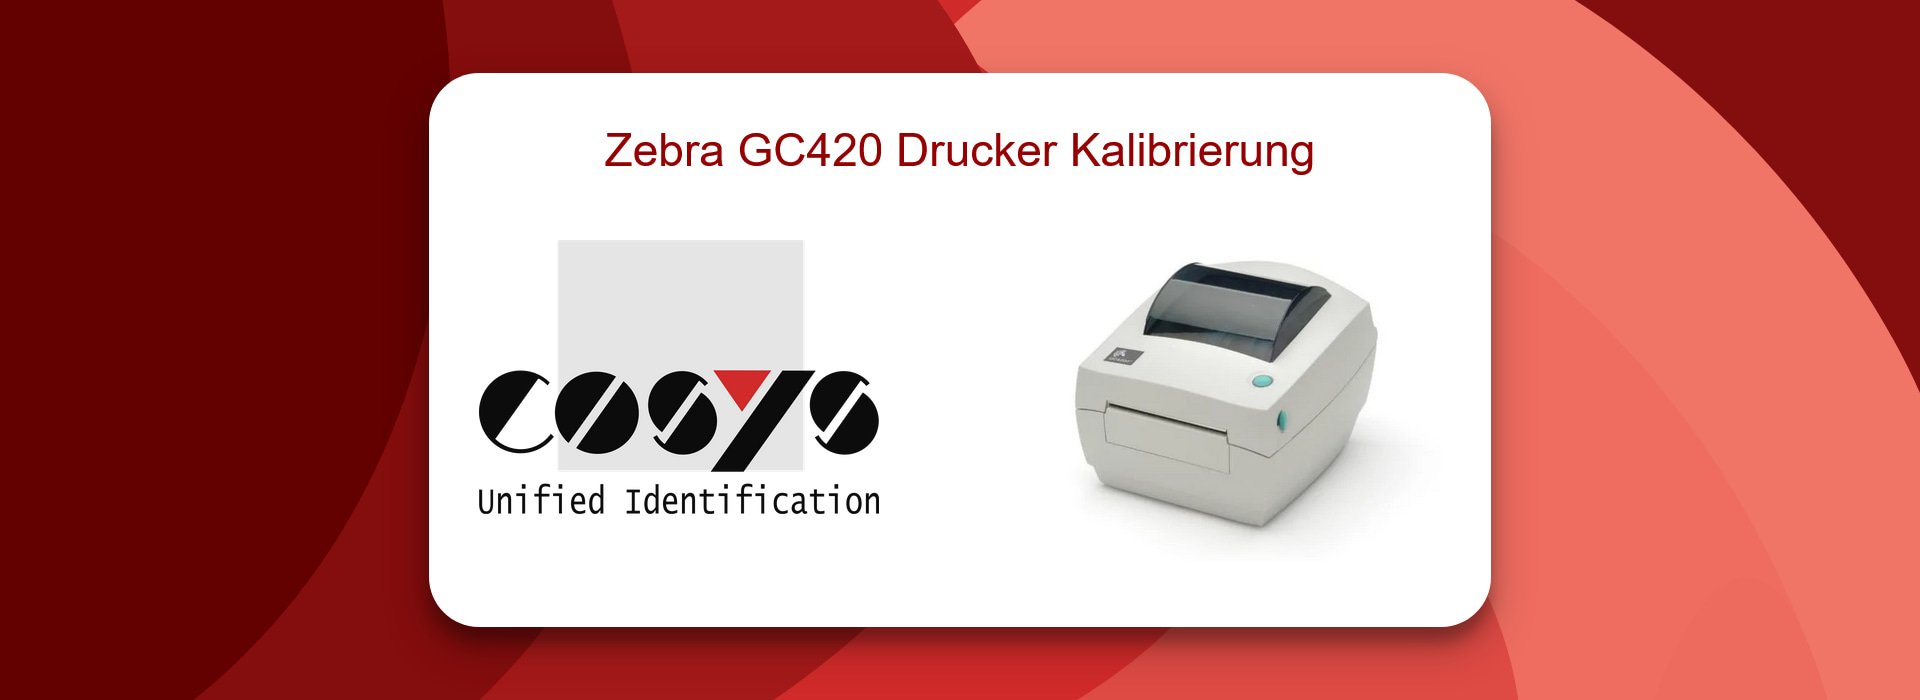 Zebra GC420 Drucker Kalibrierungs-Tipps